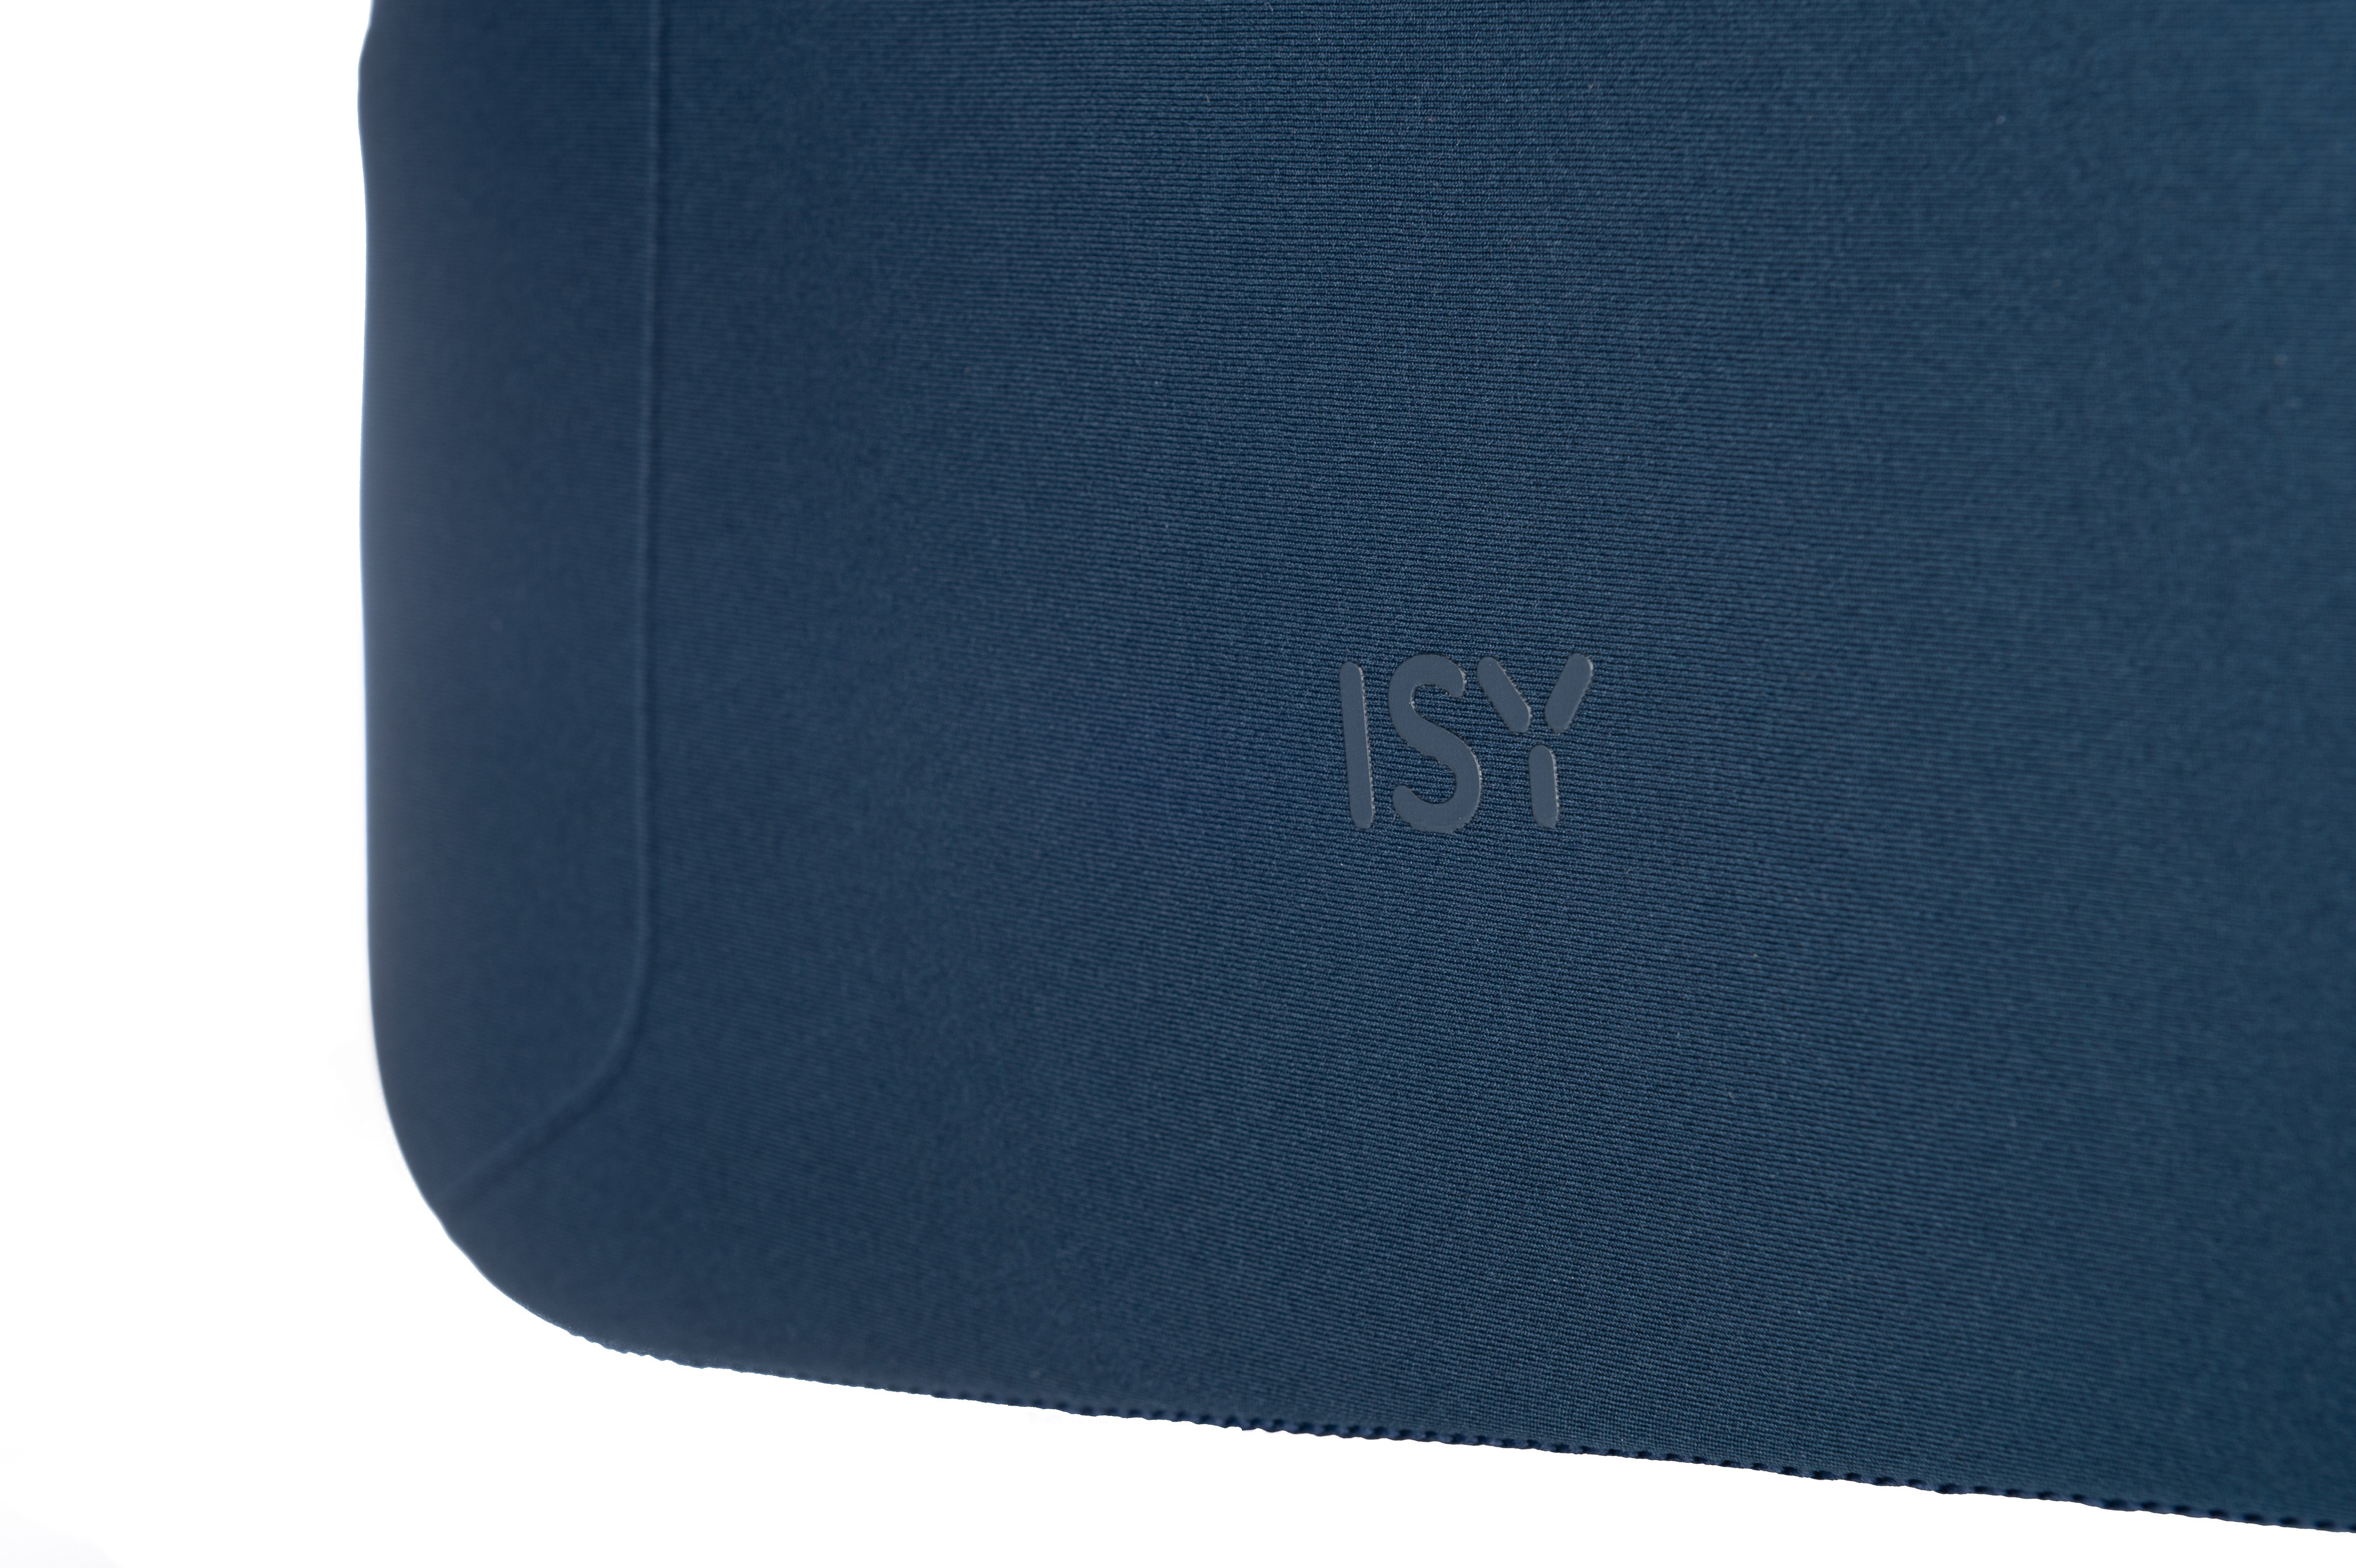 ISY INB-1560 Notebooktasche Sleeve für Universal Polyester, 100% Blau